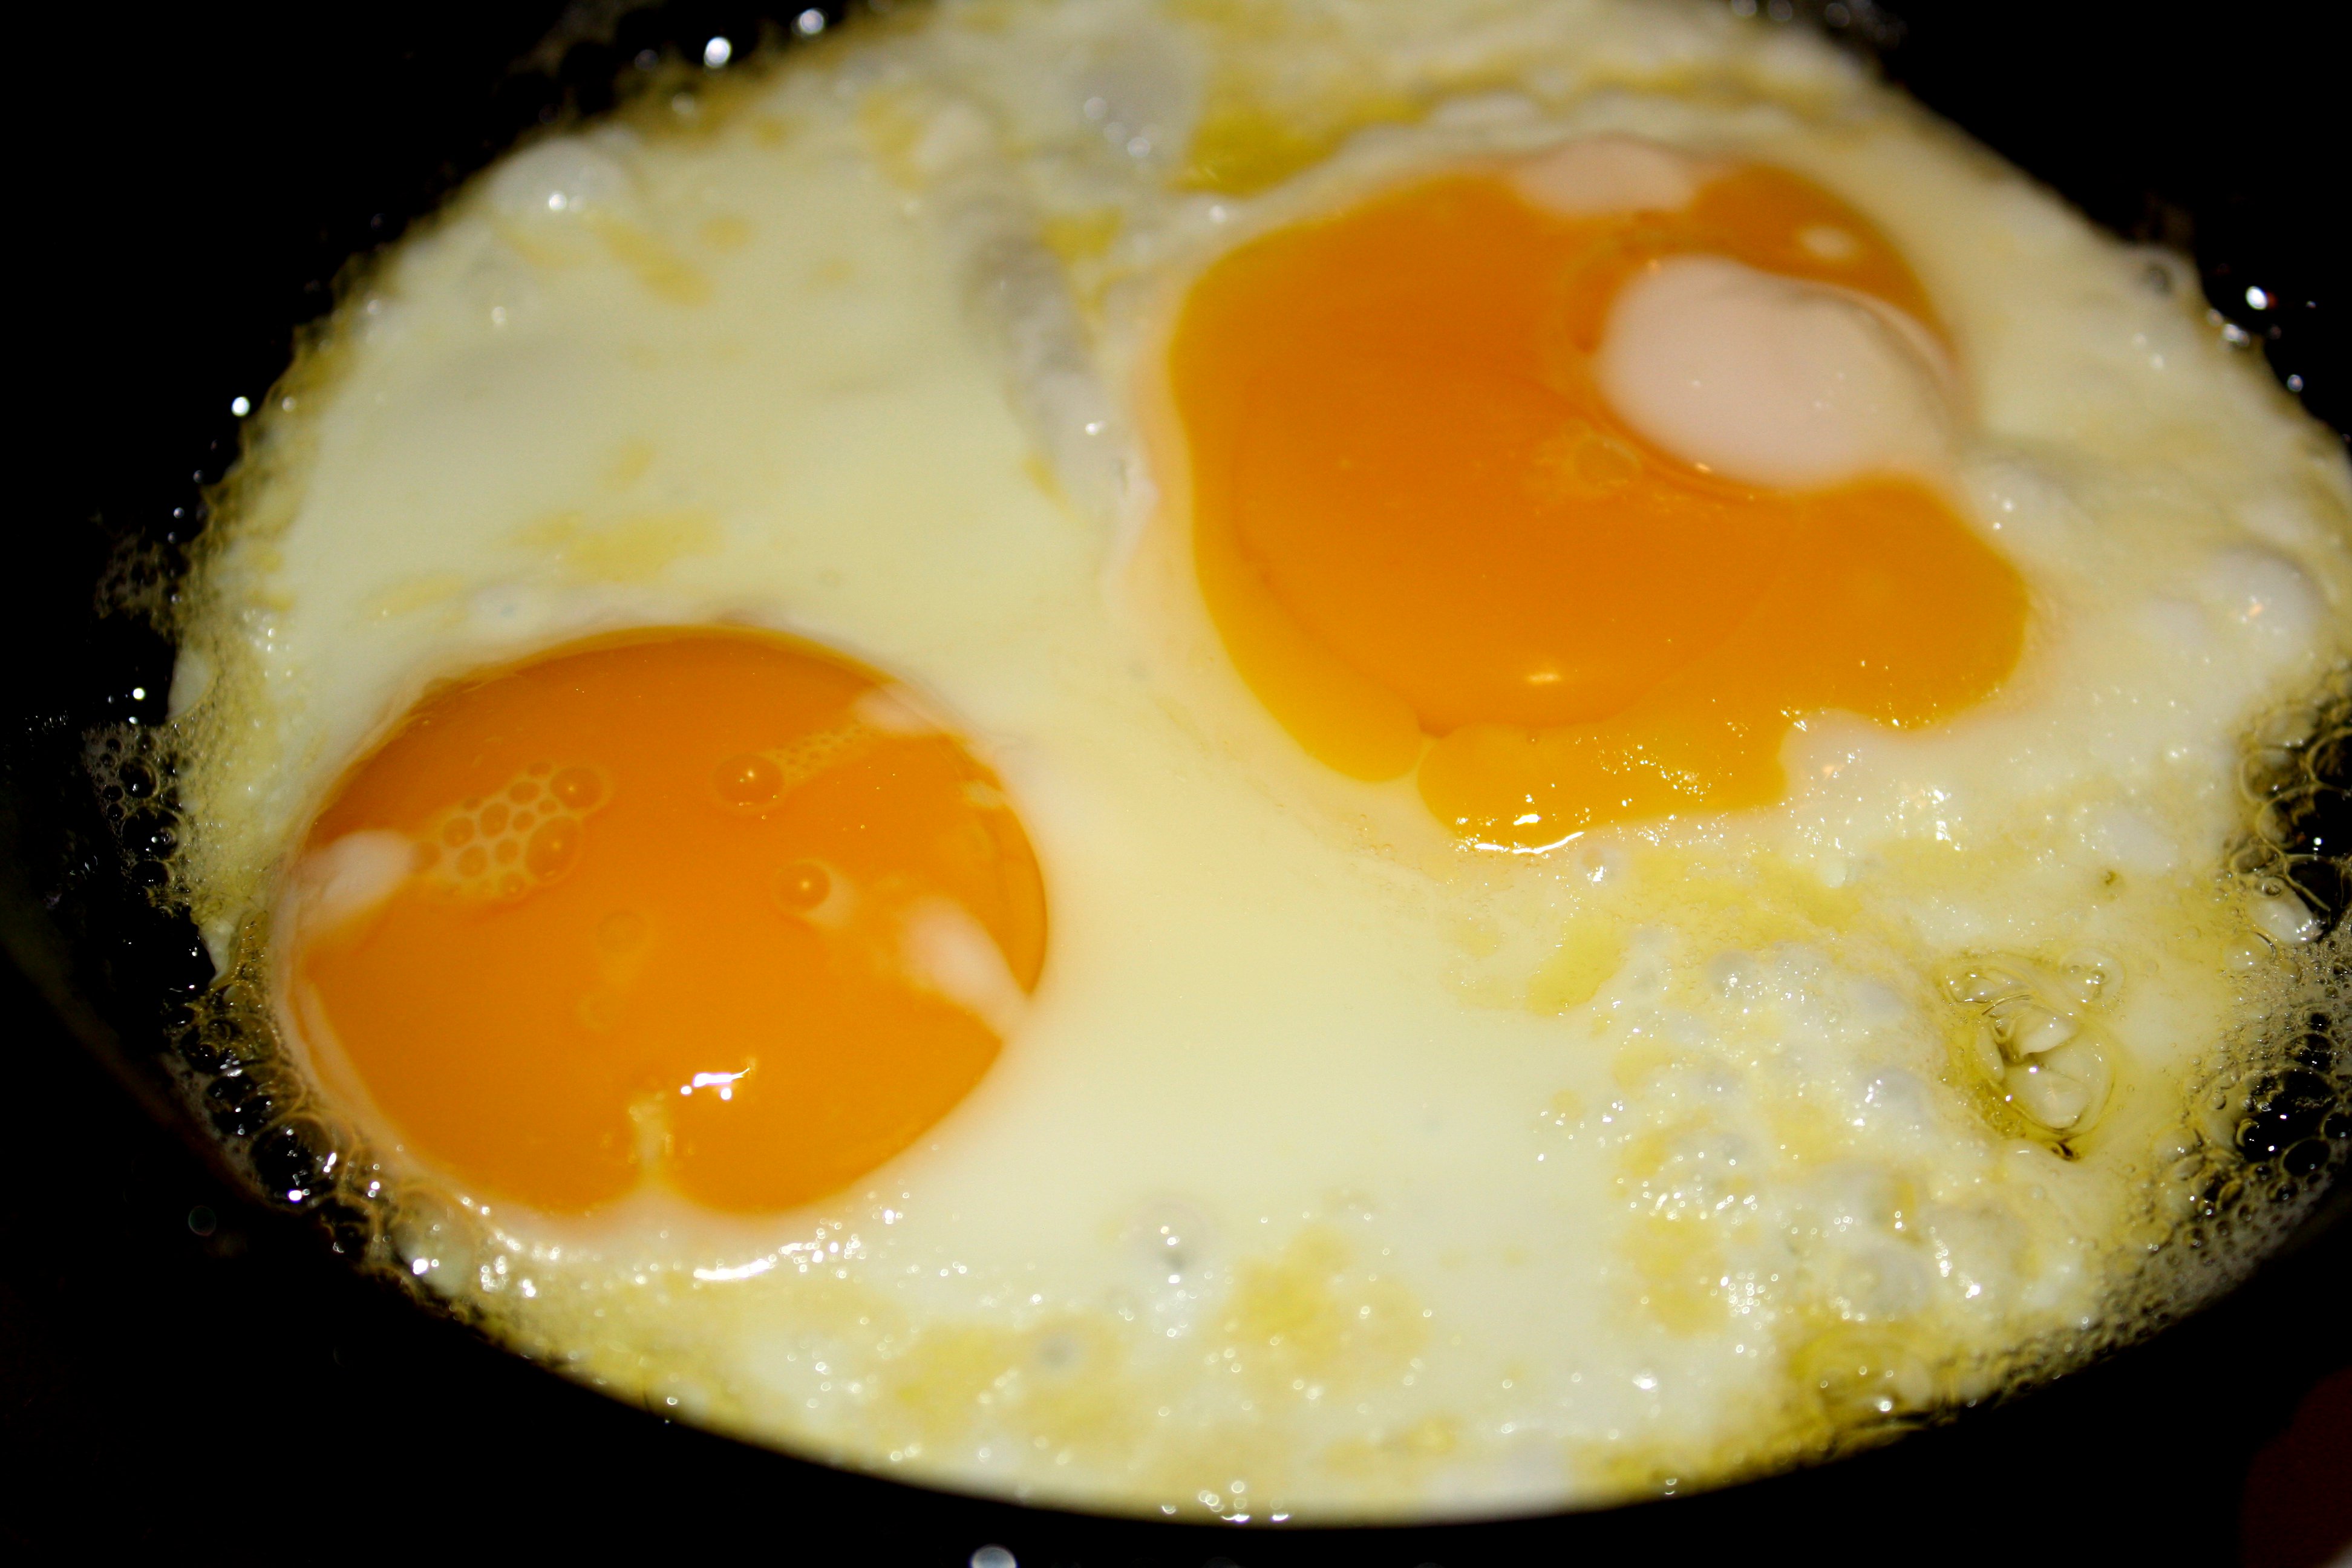 Eggs up. Санни Сайд ап яичница. Закрытая яичница. Вторые блюда с яичным желтком. Яичница без желтка.